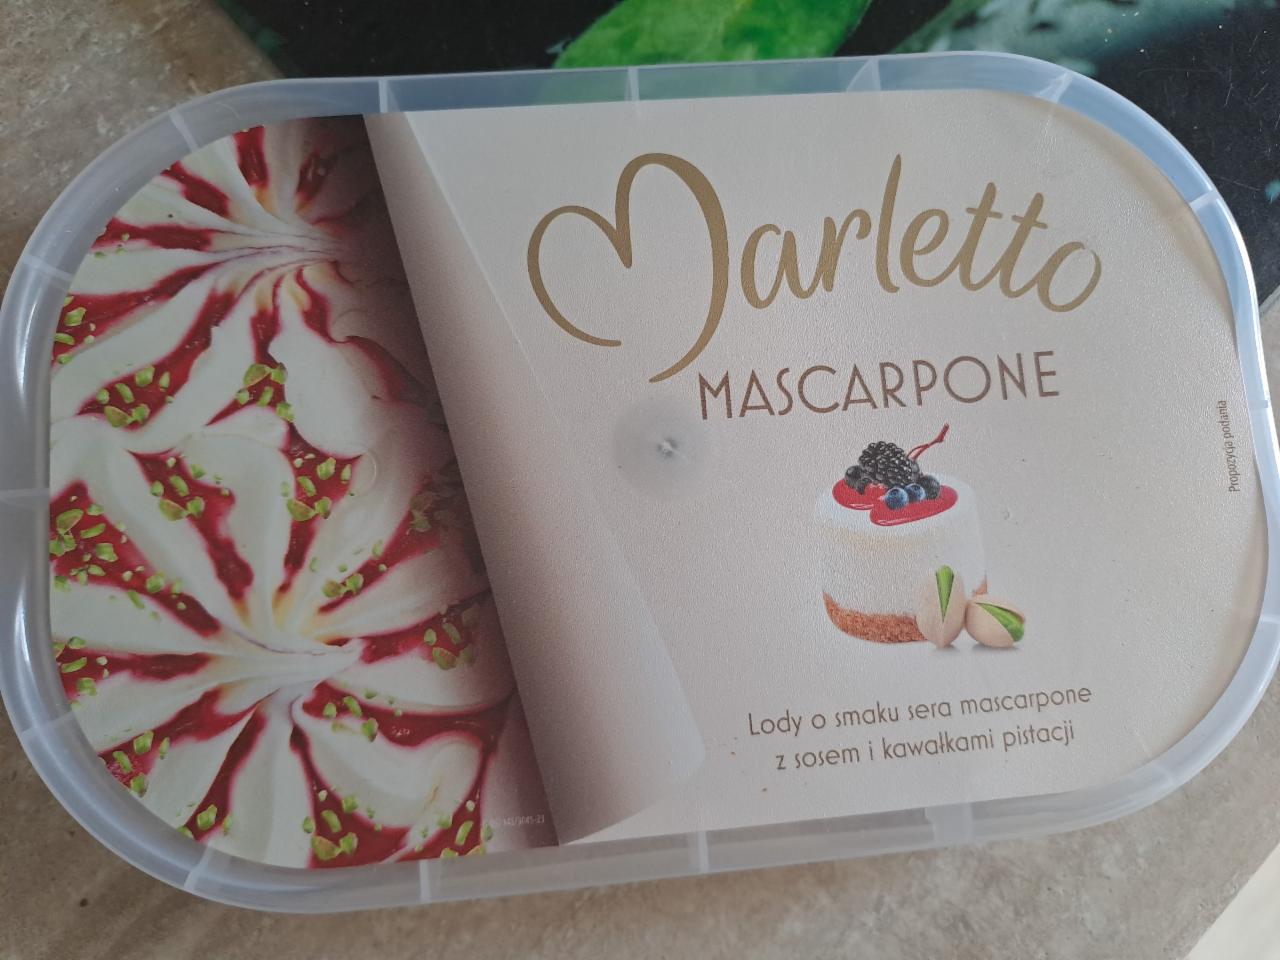 Zdjęcia - Marletto Mascarpone Lody o smaku sera mascarpone z sosem i kawałkami pistacji 